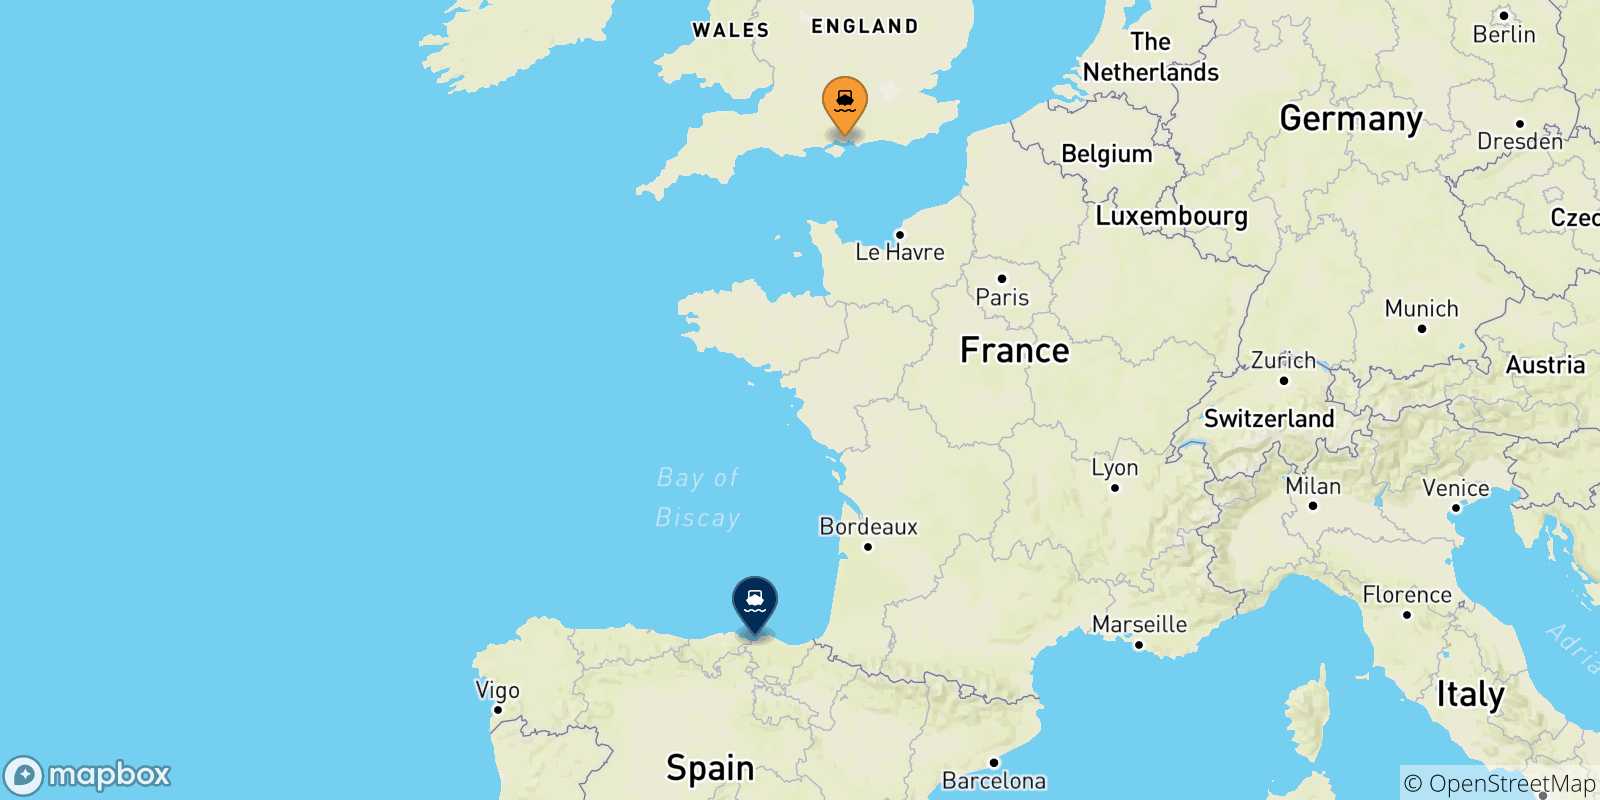 Mappa delle possibili rotte tra l'Inghilterra e Bilbao